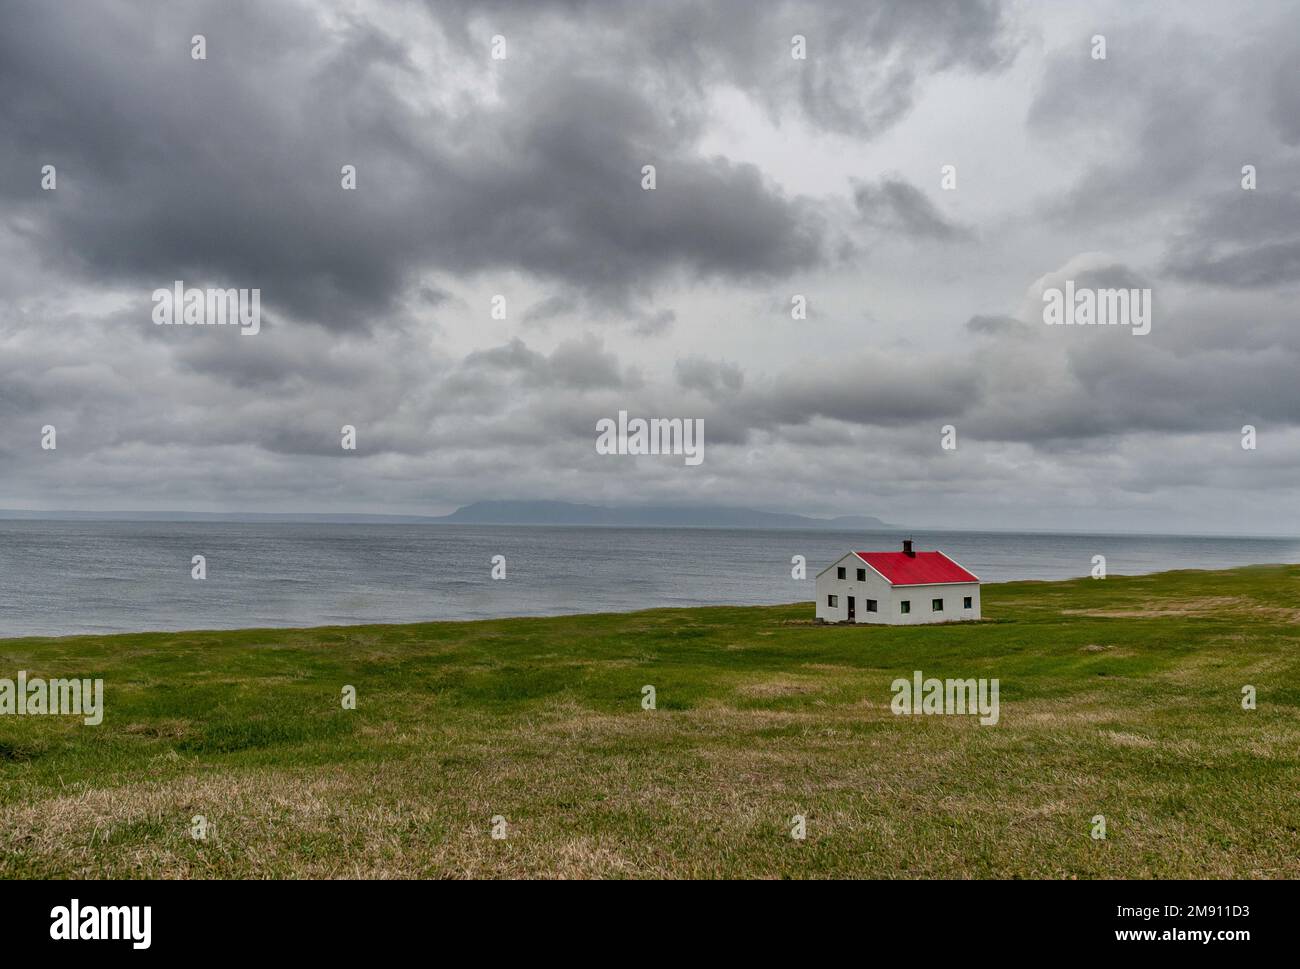 Paysage islandais avec bâtiment Lonely. Ciel bleu nuageux Banque D'Images